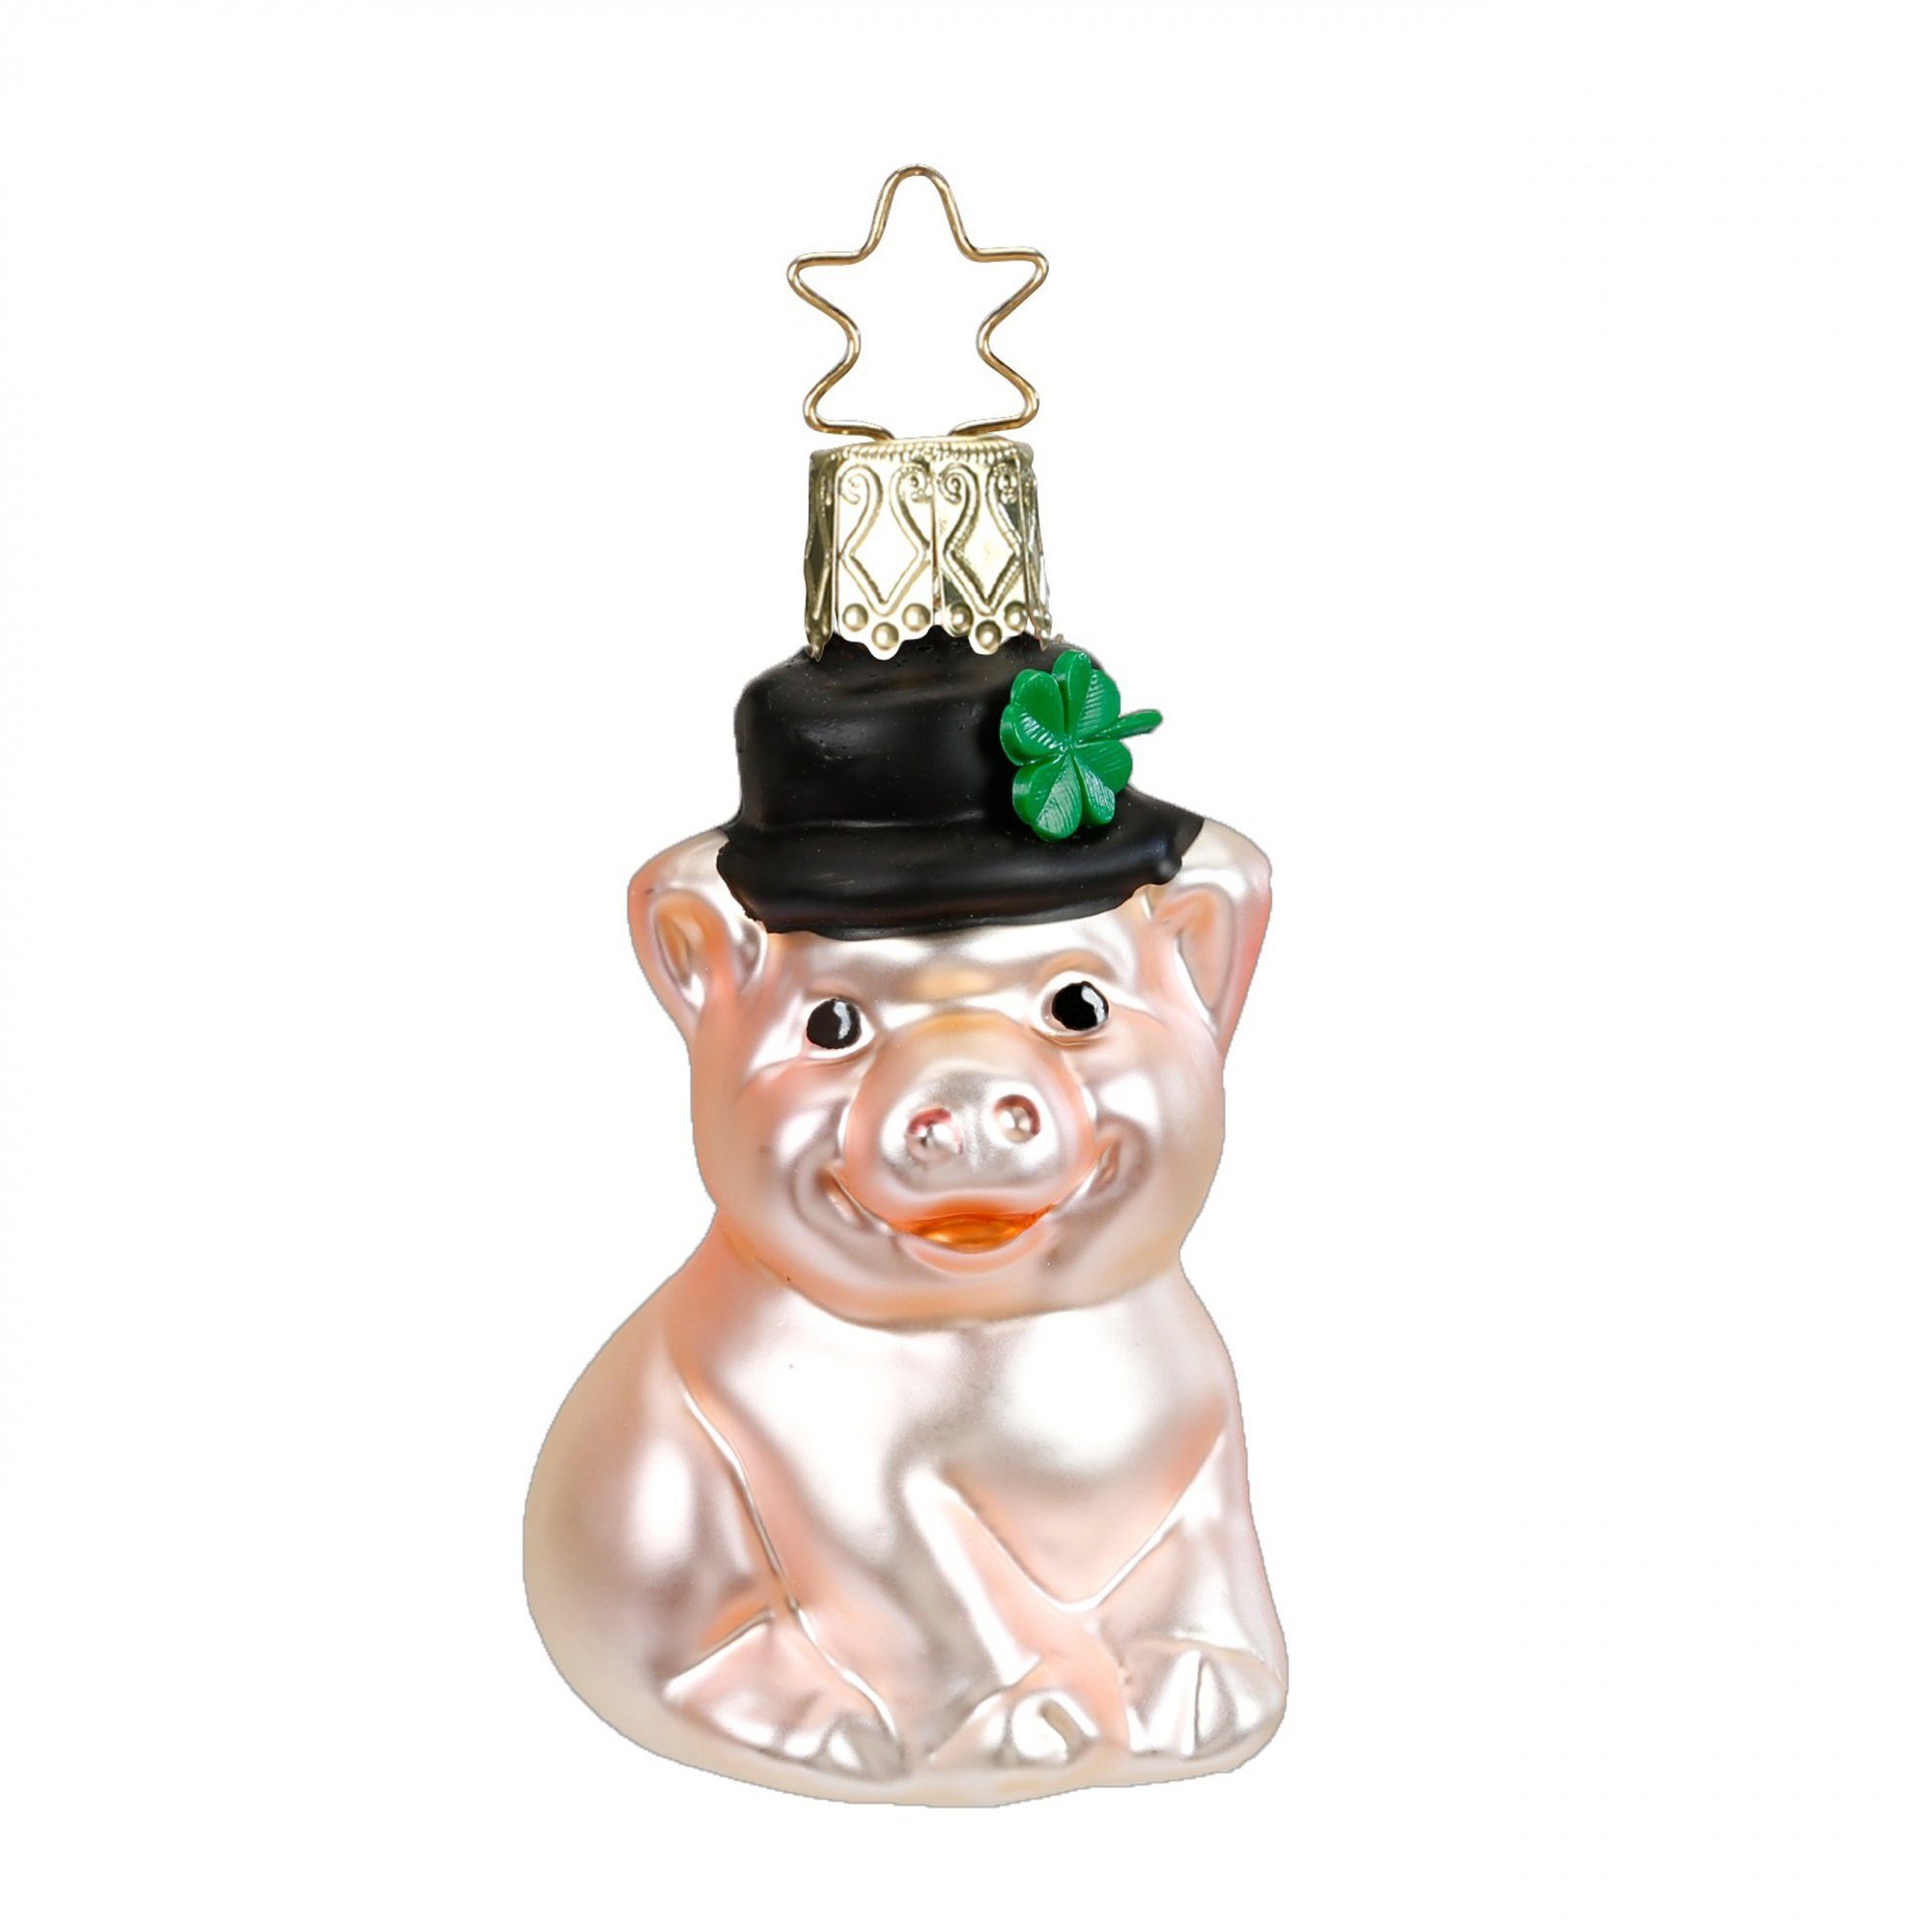 INGE-GLAS® Schweinchen Christbaumanhänger  Glücksferkel Inge mit Kleeblatt, Stenekrönchen Glas - Christbaumschmuck Inge-Glas